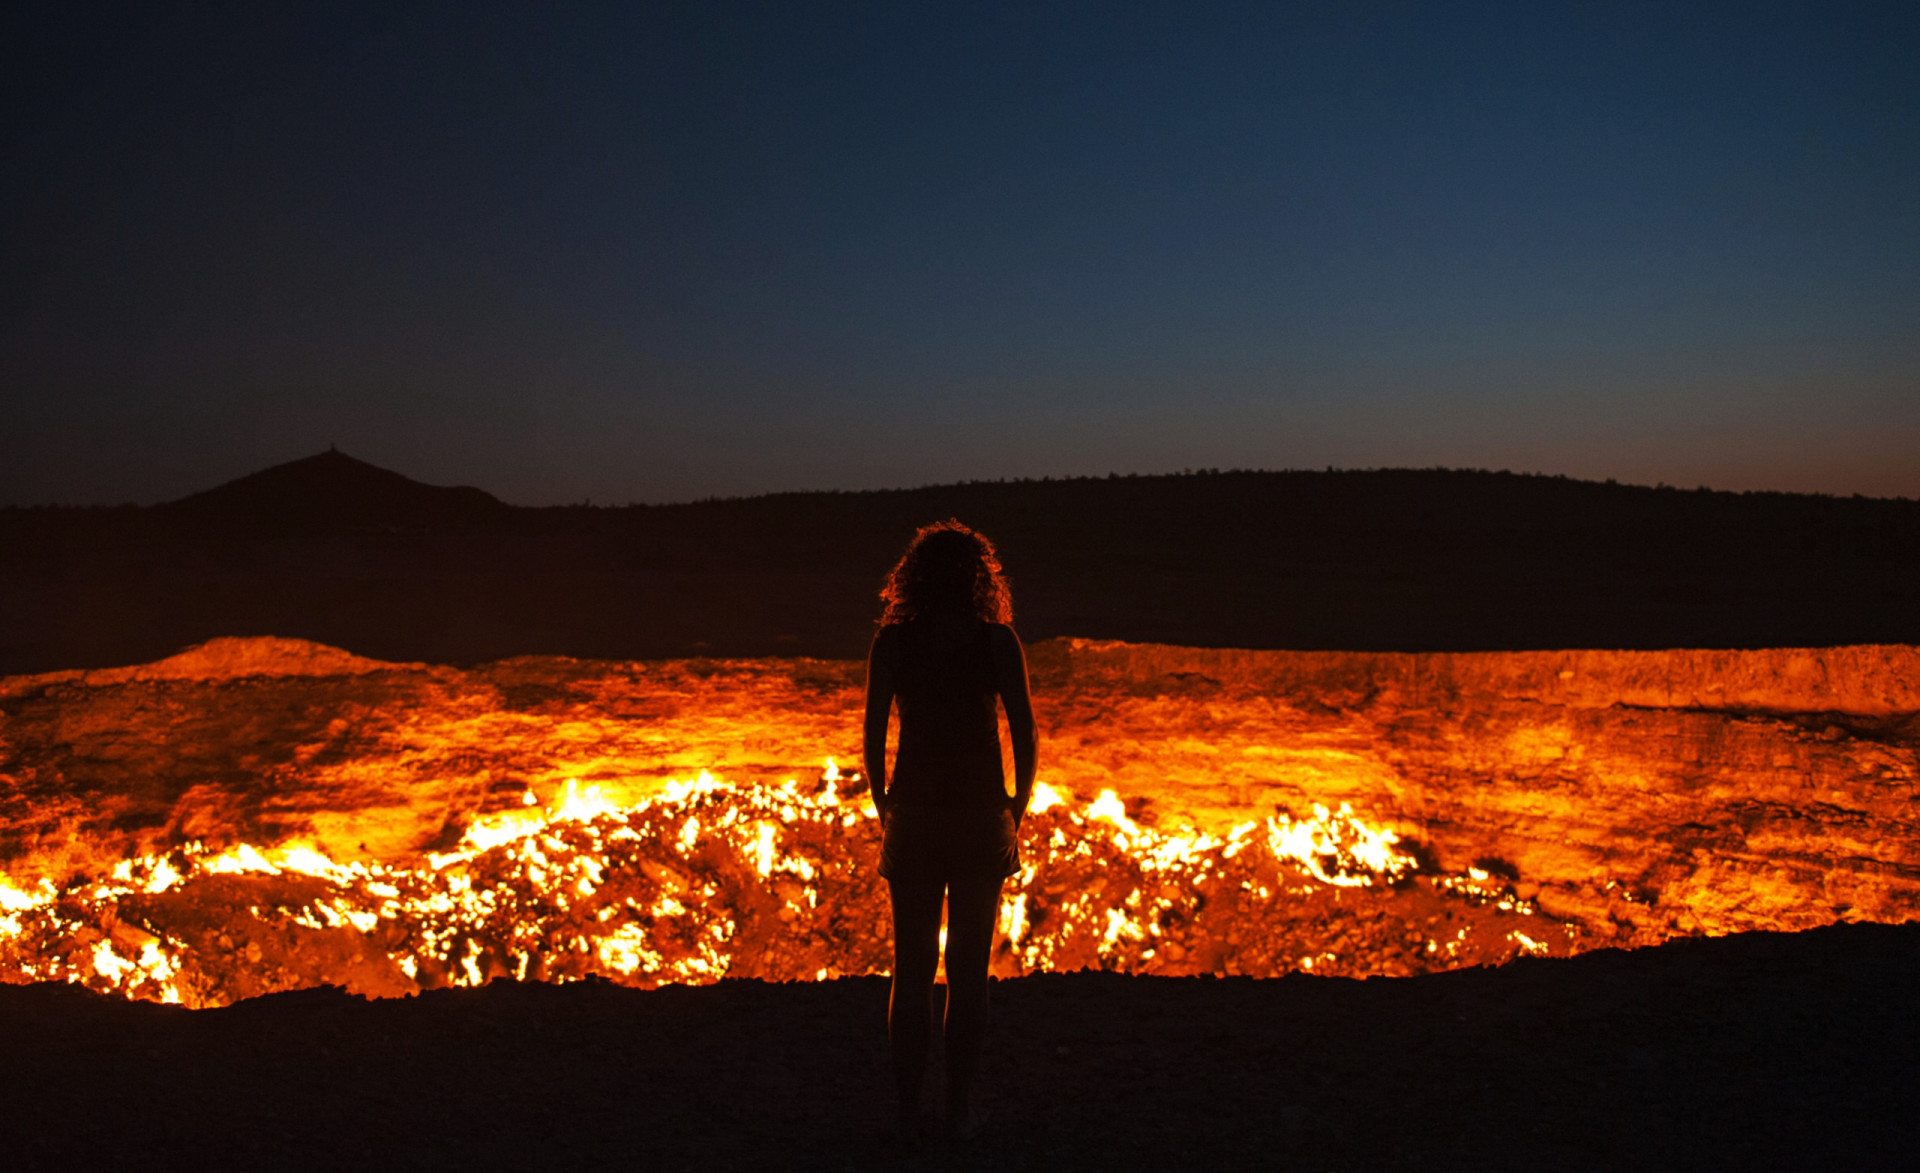 <p>Le cratère de gaz de Darvaza, situé au milieu du désert de Karakum au Turkménistan, est un champ de gaz naturel brûlant qui a été décrit de manière imaginative comme la "porte de l'enfer". Il évoque en effet l'image d'un gouffre satanique où les mortels sont engloutis dans un enfer diabolique.</p>